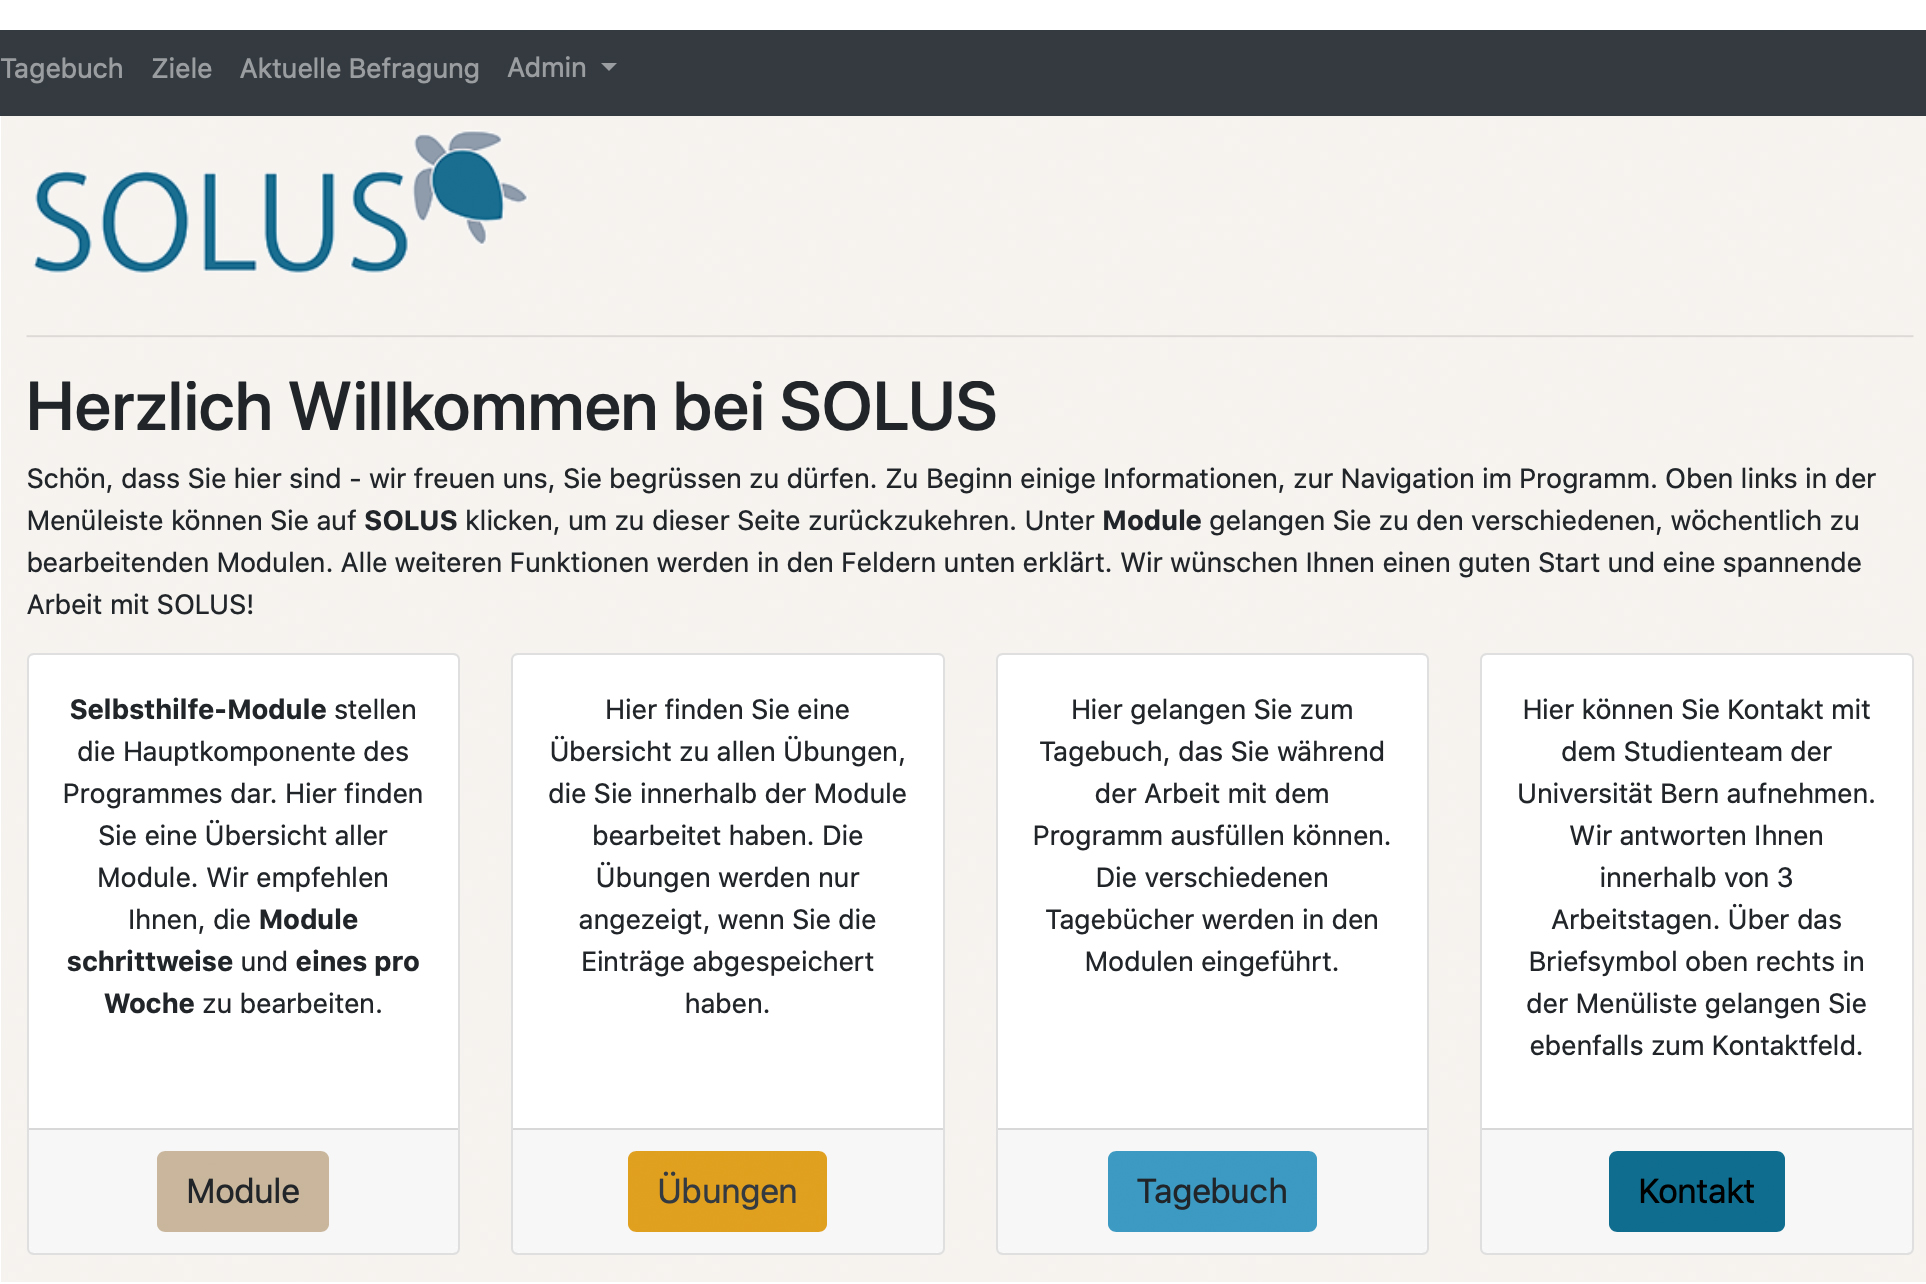 Startseite der intenetbasierten Selbsthilfeintervention SOLUS, deren Wirksamkeit an der Universität Bern untersucht wird. © Universität Bern